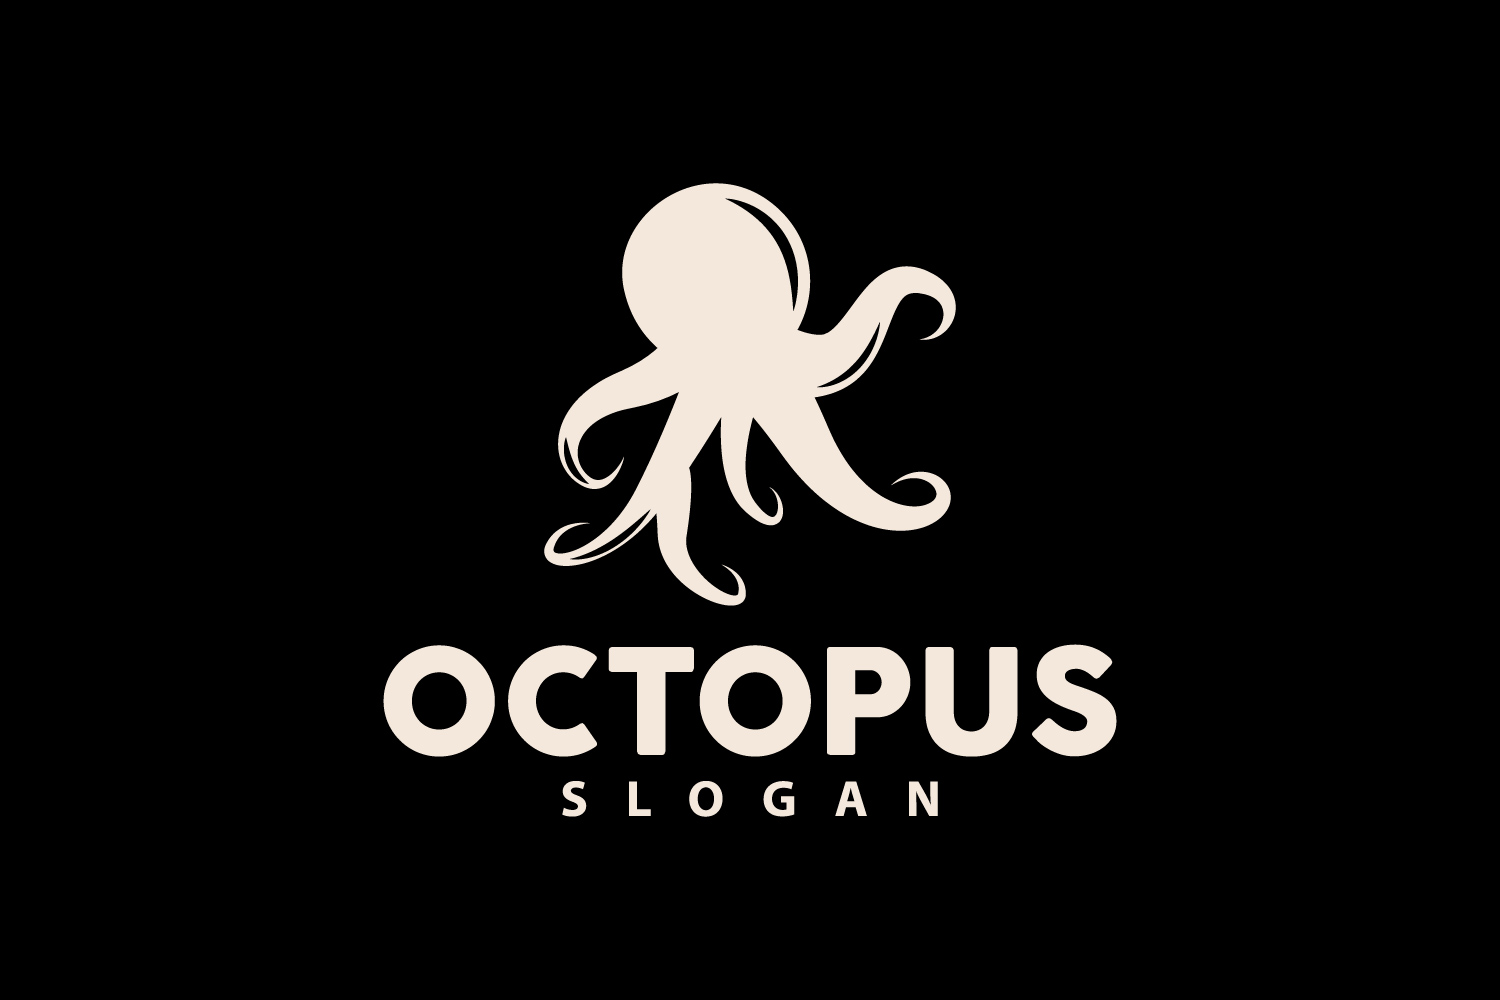 Octopus Logo Old Retro Vintage DesignV4